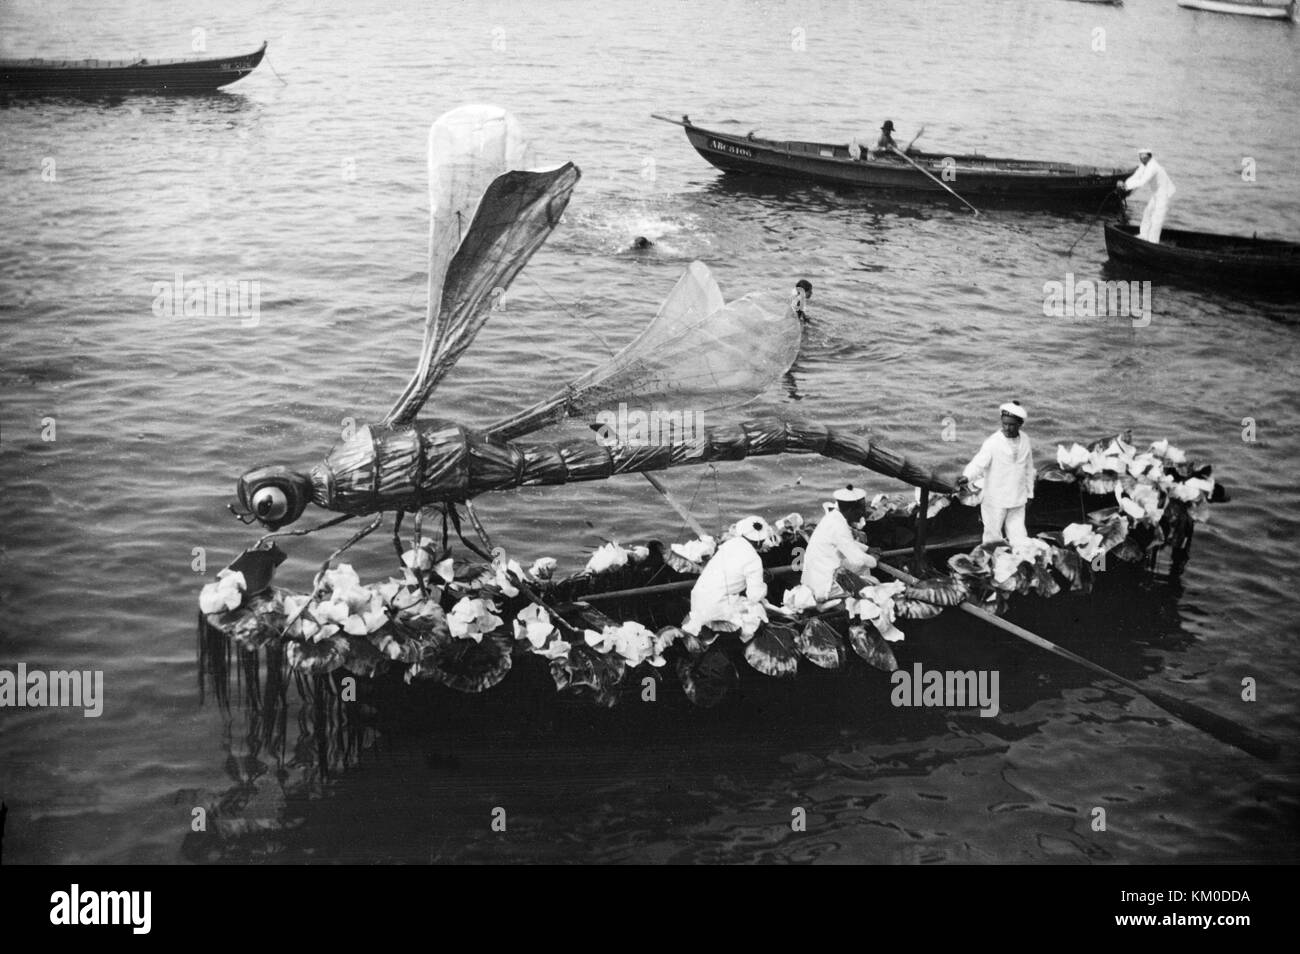 Schwarz-weiß-Bild um des späten 19. oder frühen 20. Jahrhundert, ein wachsendes Boot in einem Festival, mit einem riesigen Kunstvollen Dragonfly Modell, fast die Länge des Bootes. Boot ist auch mit Blumen verziert und hat zwei Männer rudern und einem anderen Mann auch auf dem Boot. Stockfoto